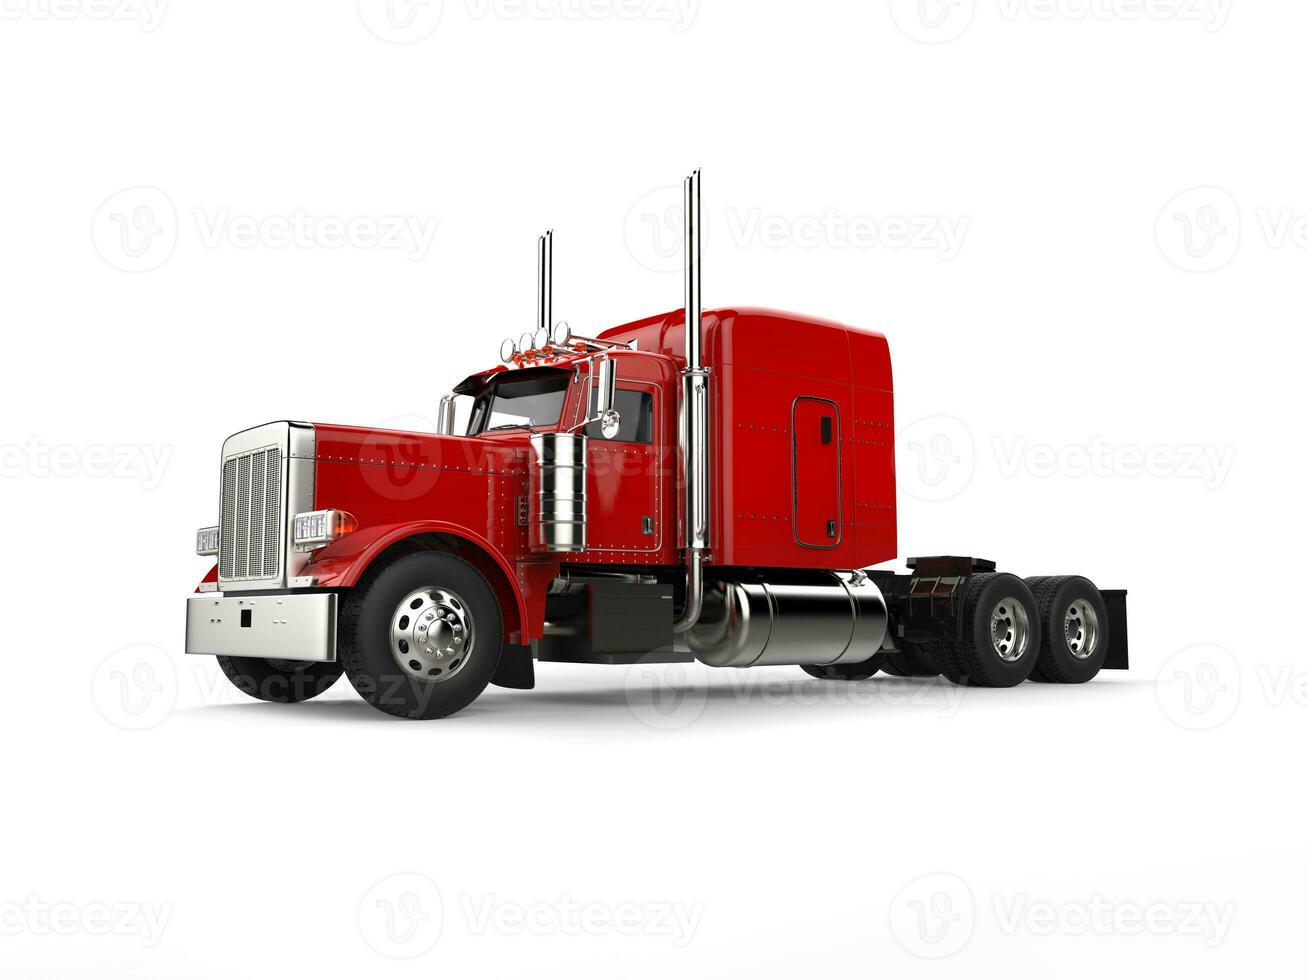 enfurecido vermelho clássico 18 veículo com rodas grande caminhão - beleza tiro foto